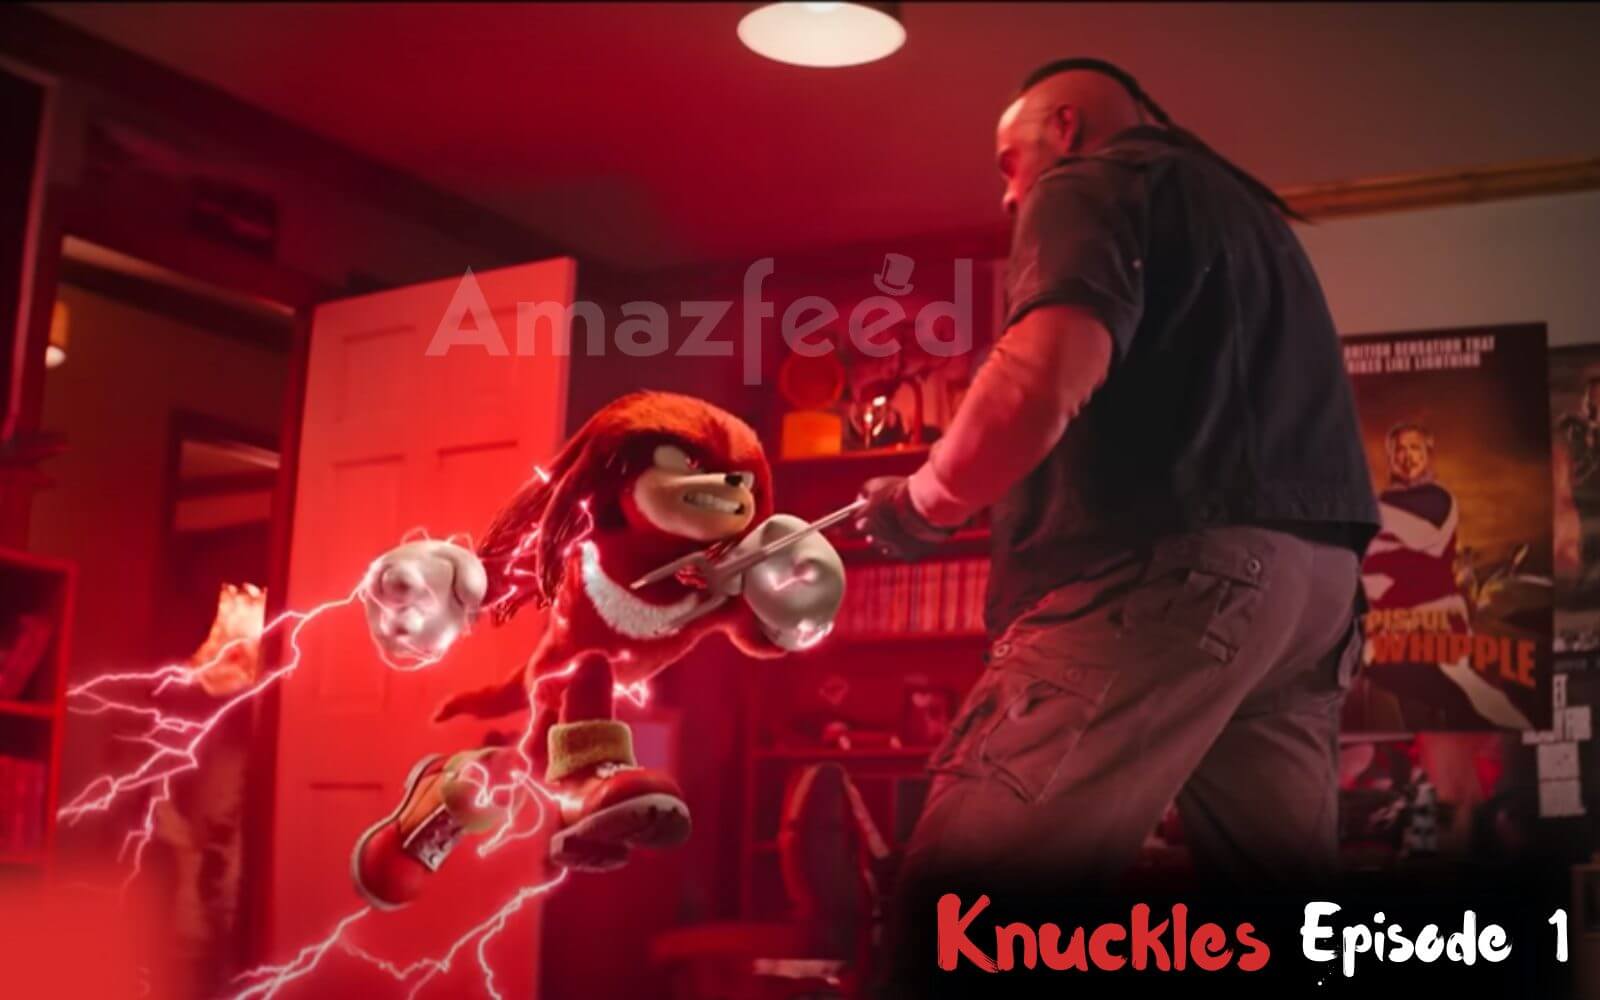 Knuckles Season 1 Episode 1 release date